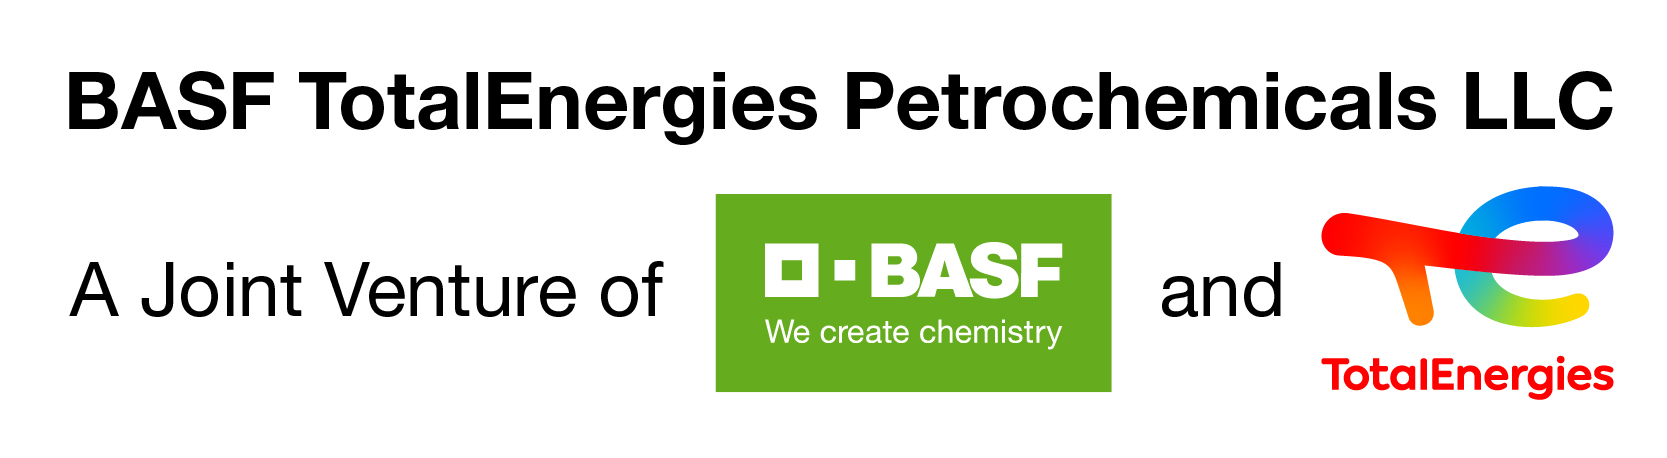 BASF TotalEnergies Petrochemicals LLC